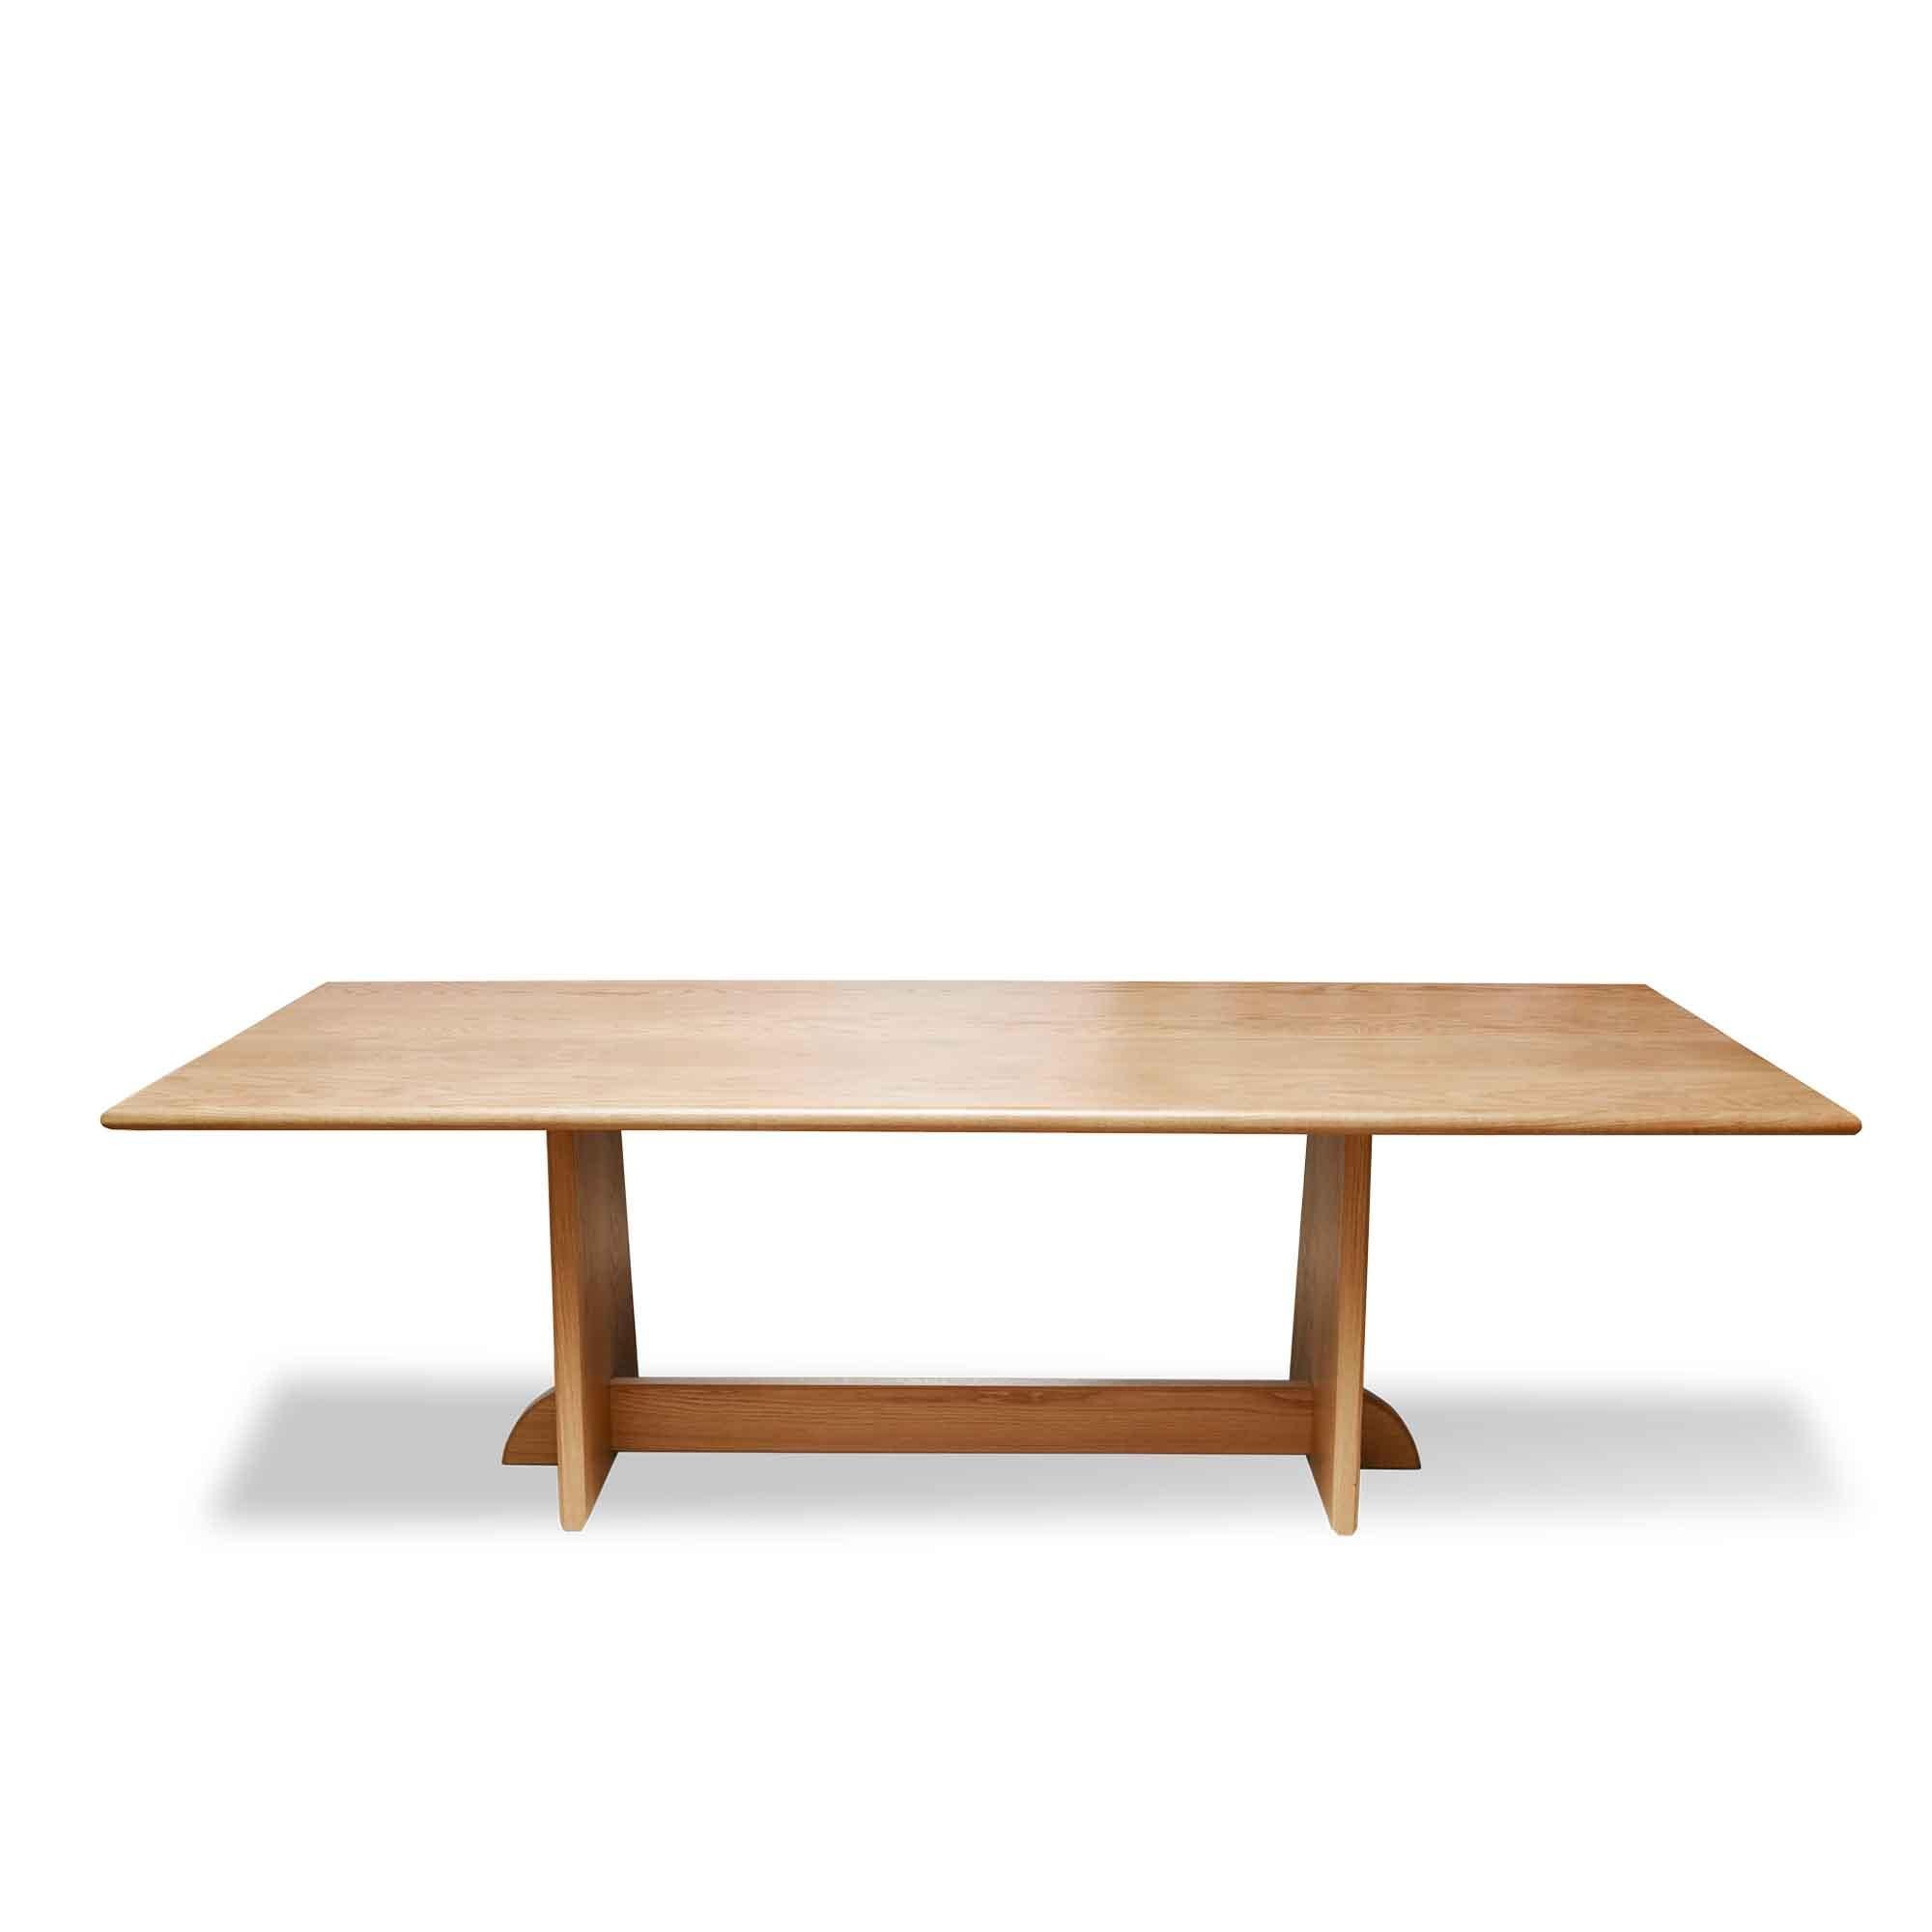 La table de salle à manger Ojai est dotée d'une base à tréteaux en bois massif et d'un plateau en pierre ou en bois massif au choix. 

La collection Lawson-Fenning est conçue et fabriquée à la main à Los Angeles, en Californie. Renseignez-vous